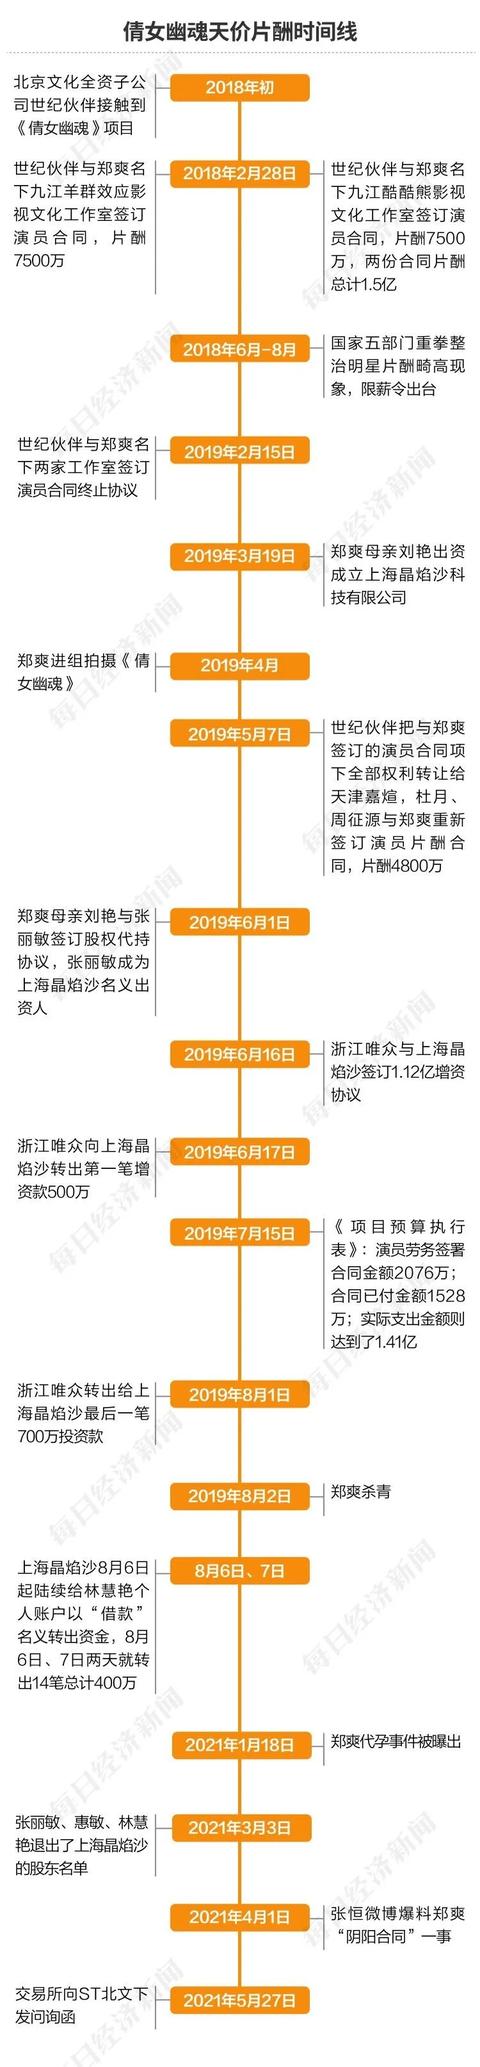 《倩女幽魂》财务造假，北京文化17位高管受罚 广电总局：《倩女幽魂》不得播出